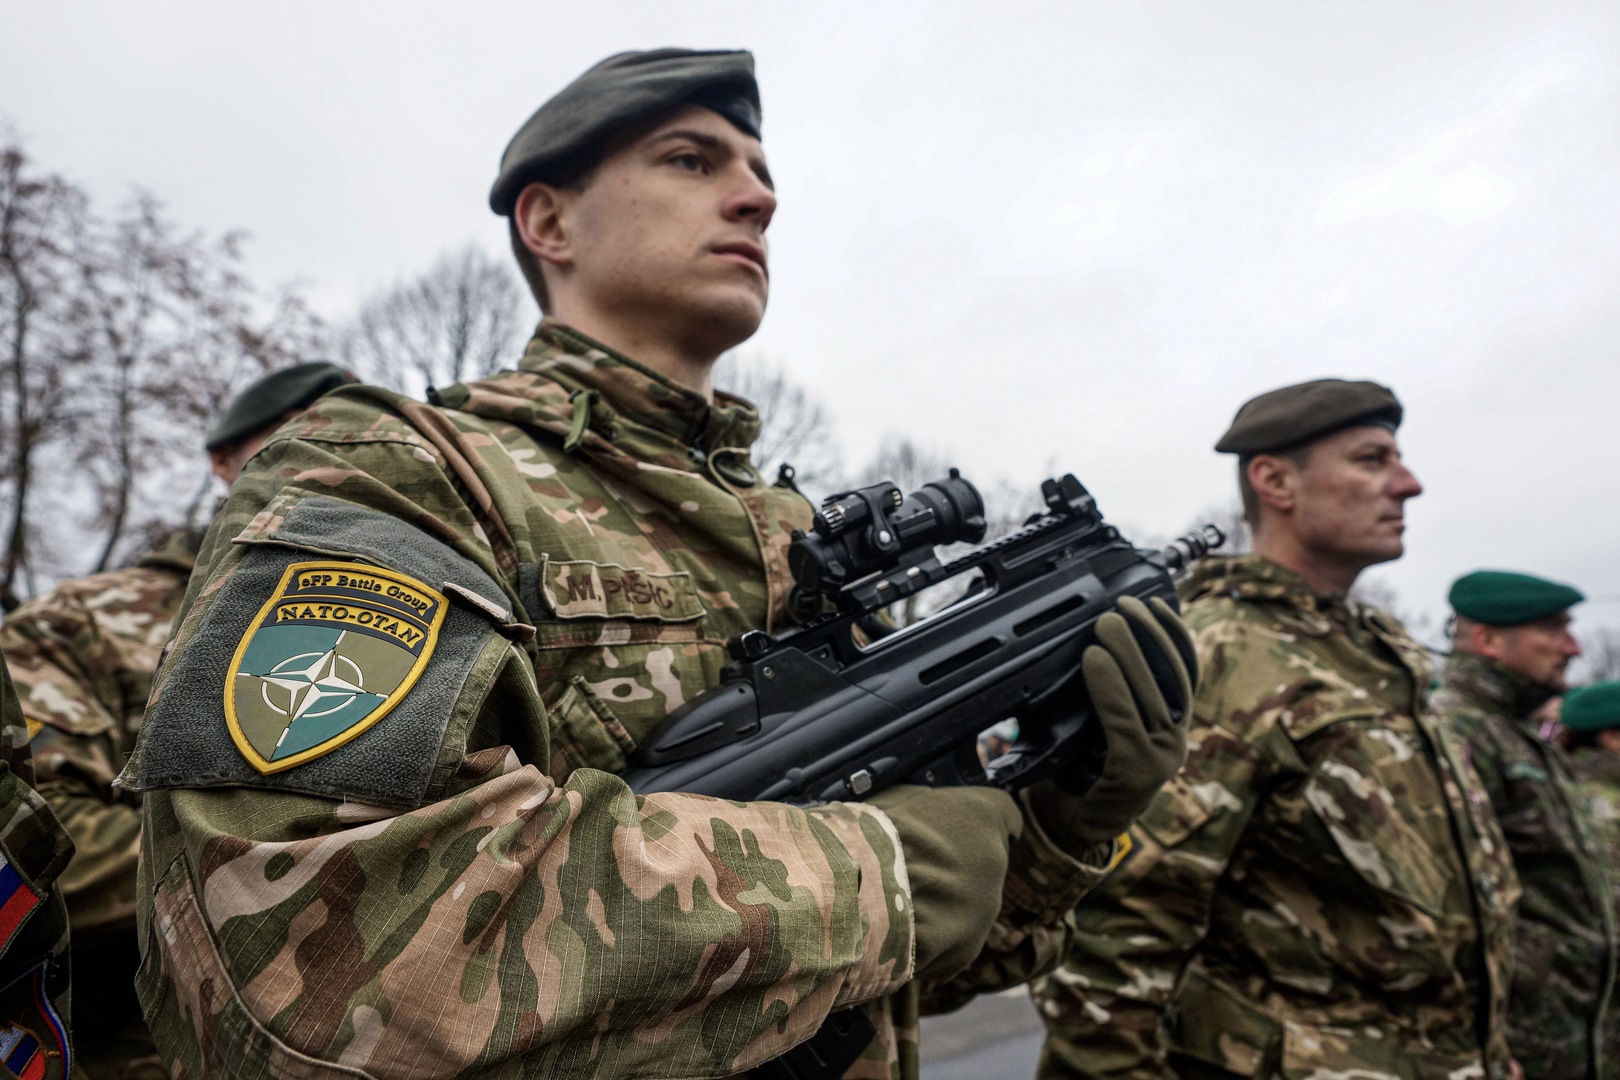 بالفيديو.. تدريبات عسكرية في وضح النهار تثير الرعب بين سكان عاصمة لاتفيا